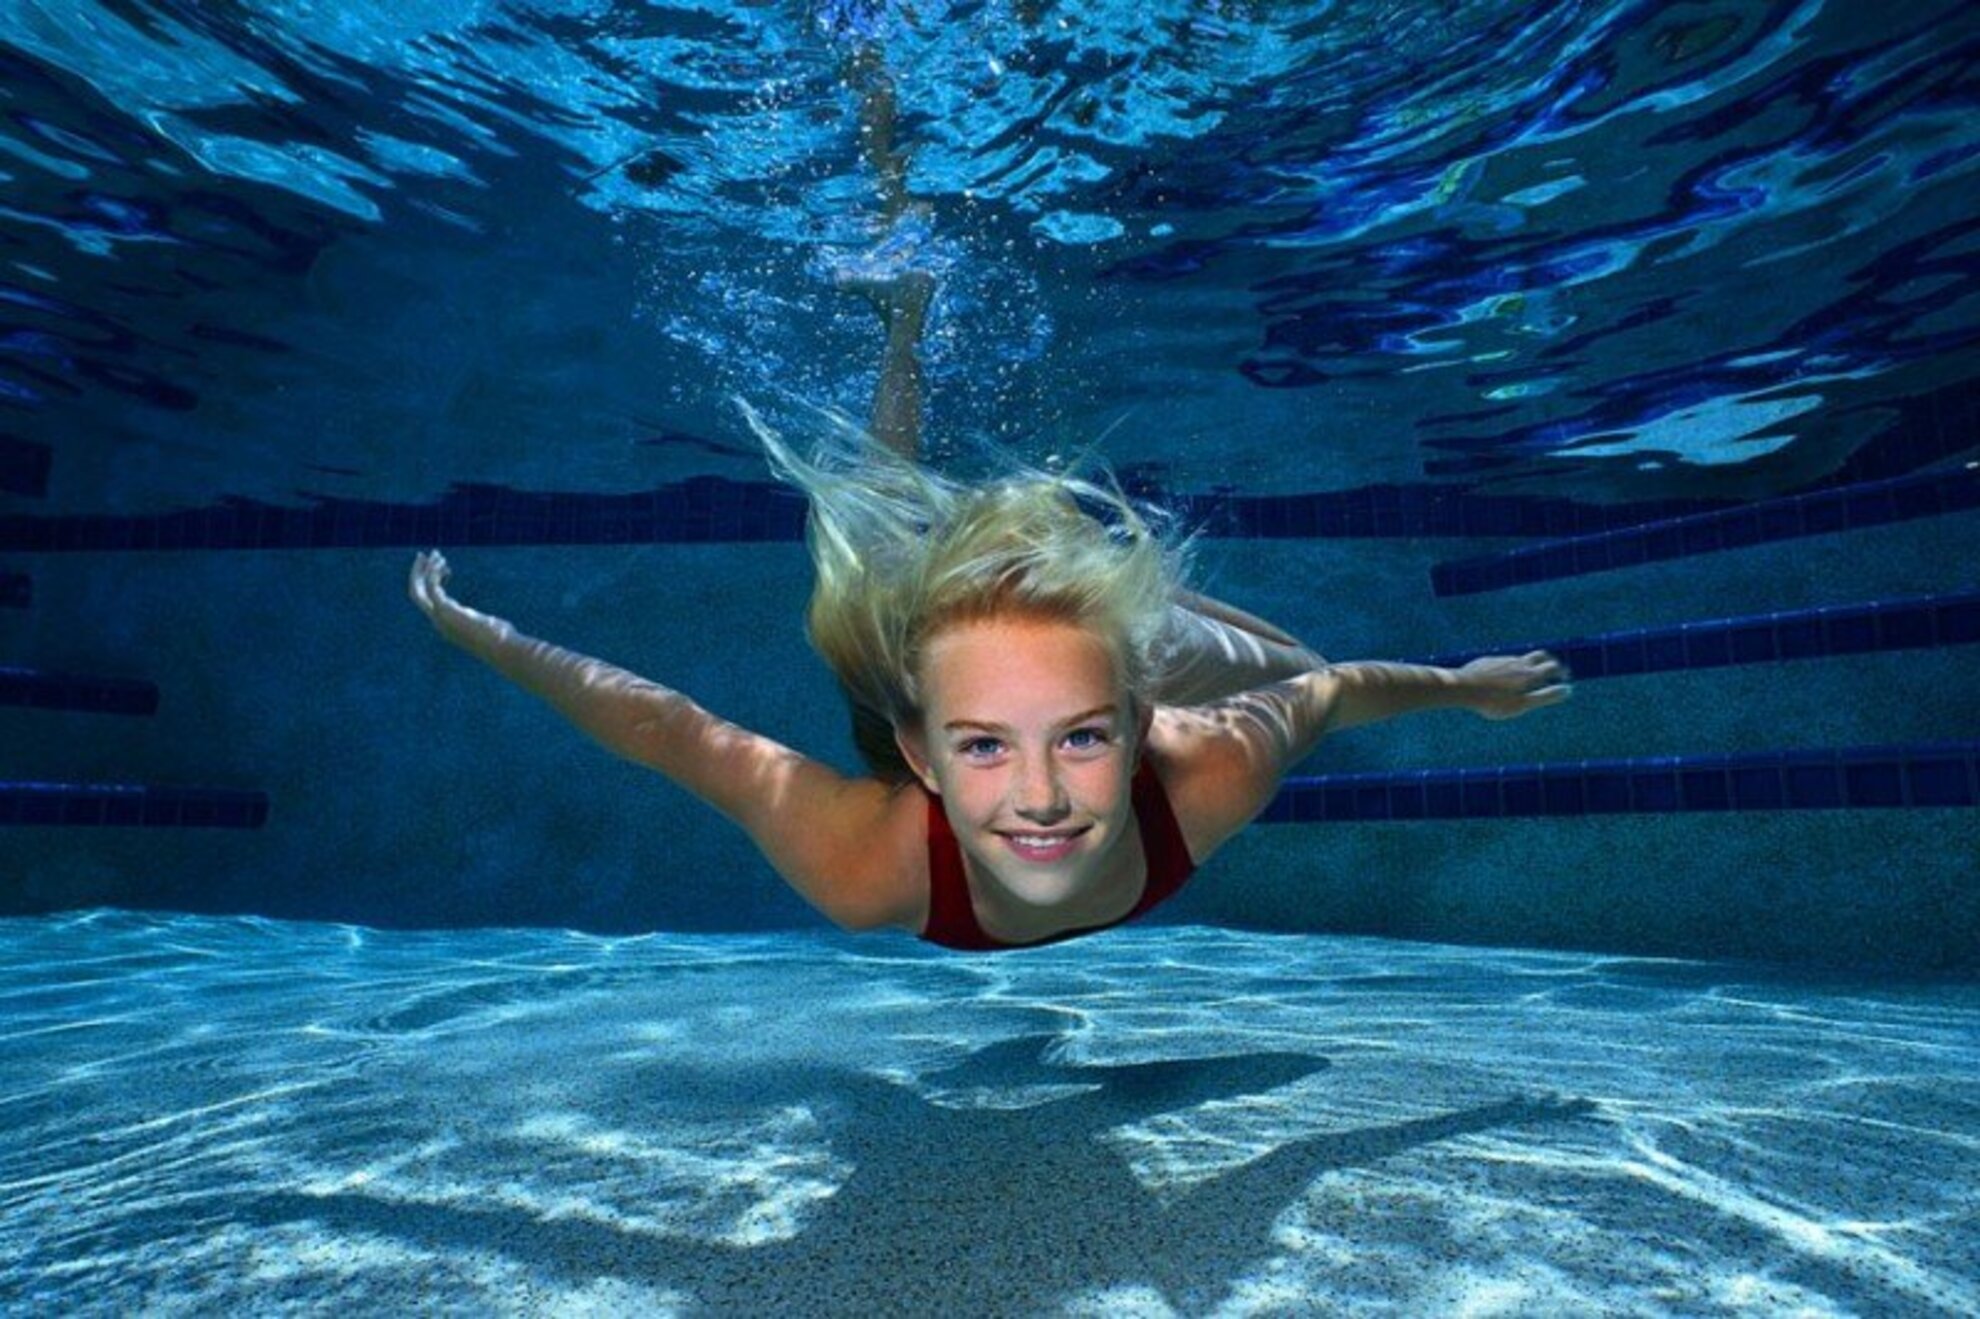 Пошли купаться в бассейн. Девушка в бассейне под водой. Бассейн под водой. Человек плывет под водой. Человек плывет в бассейне.